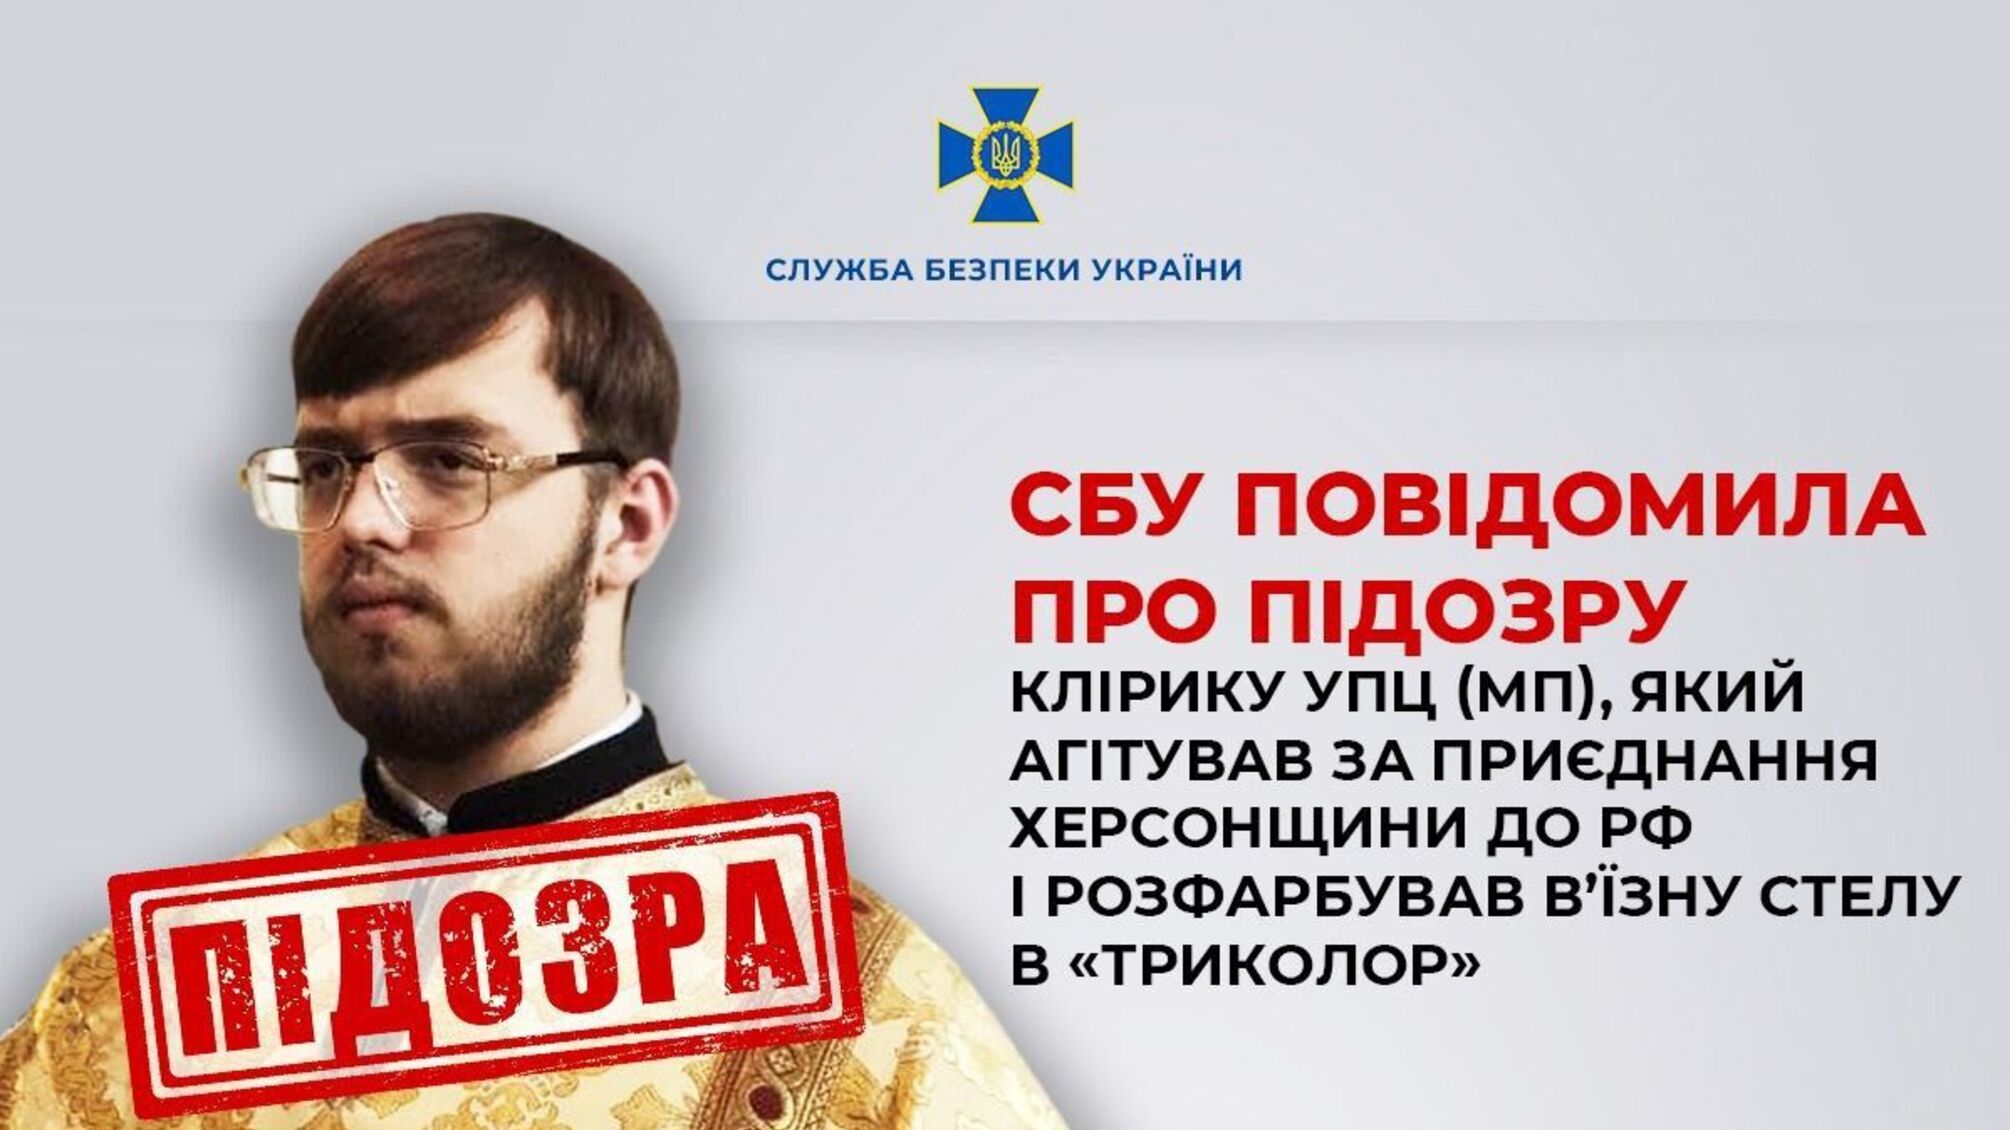 В Херсонской области СБУ объявила подозрение церковному служителю УПЦ(МП) за преступления против Украины